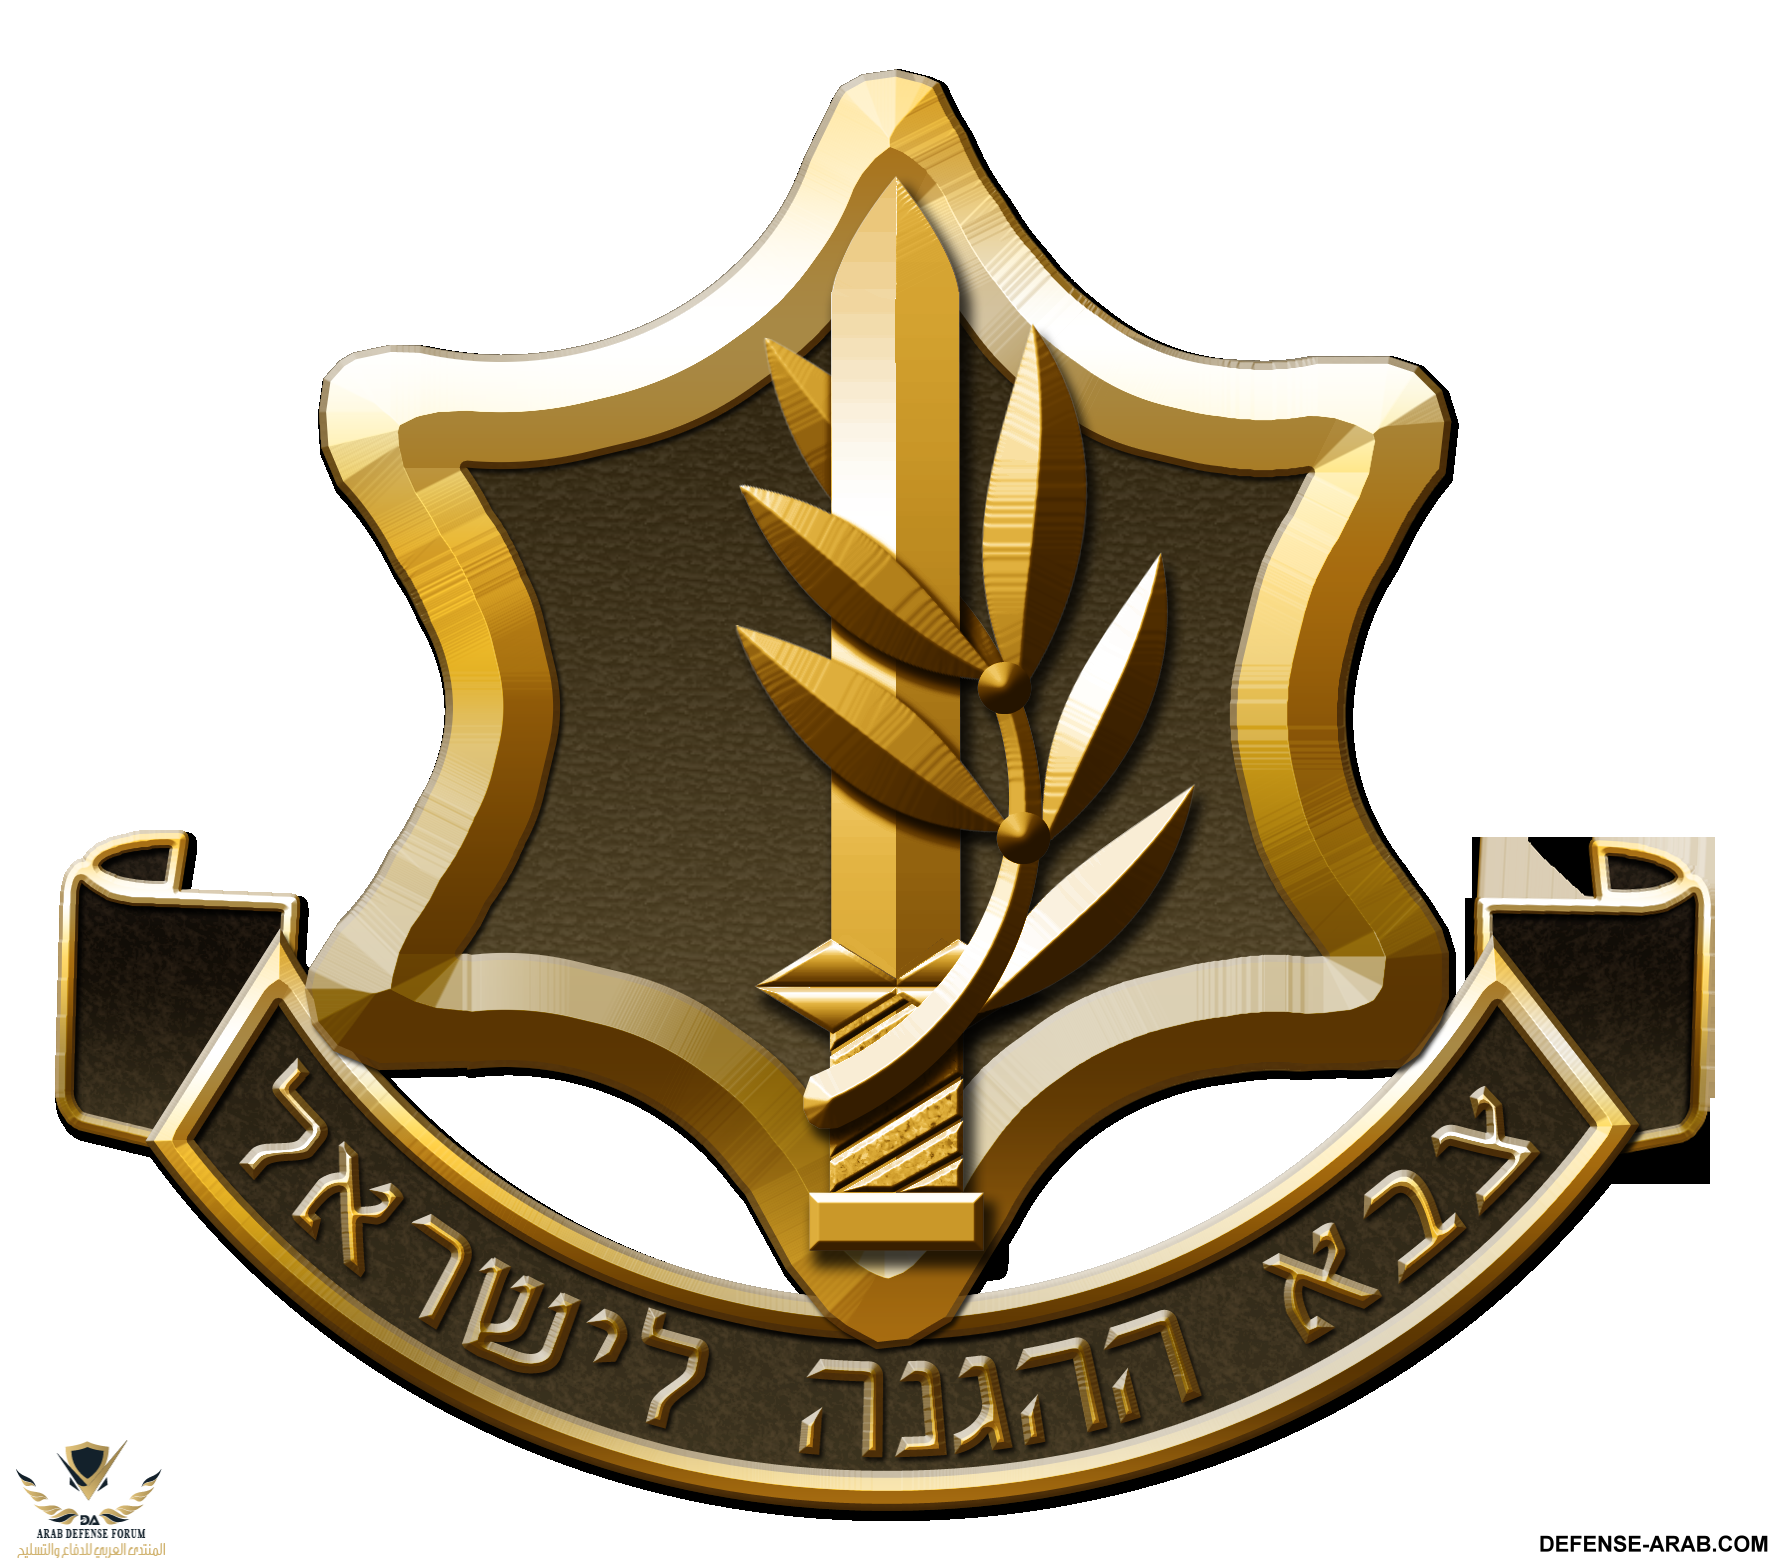 IDF_new.png